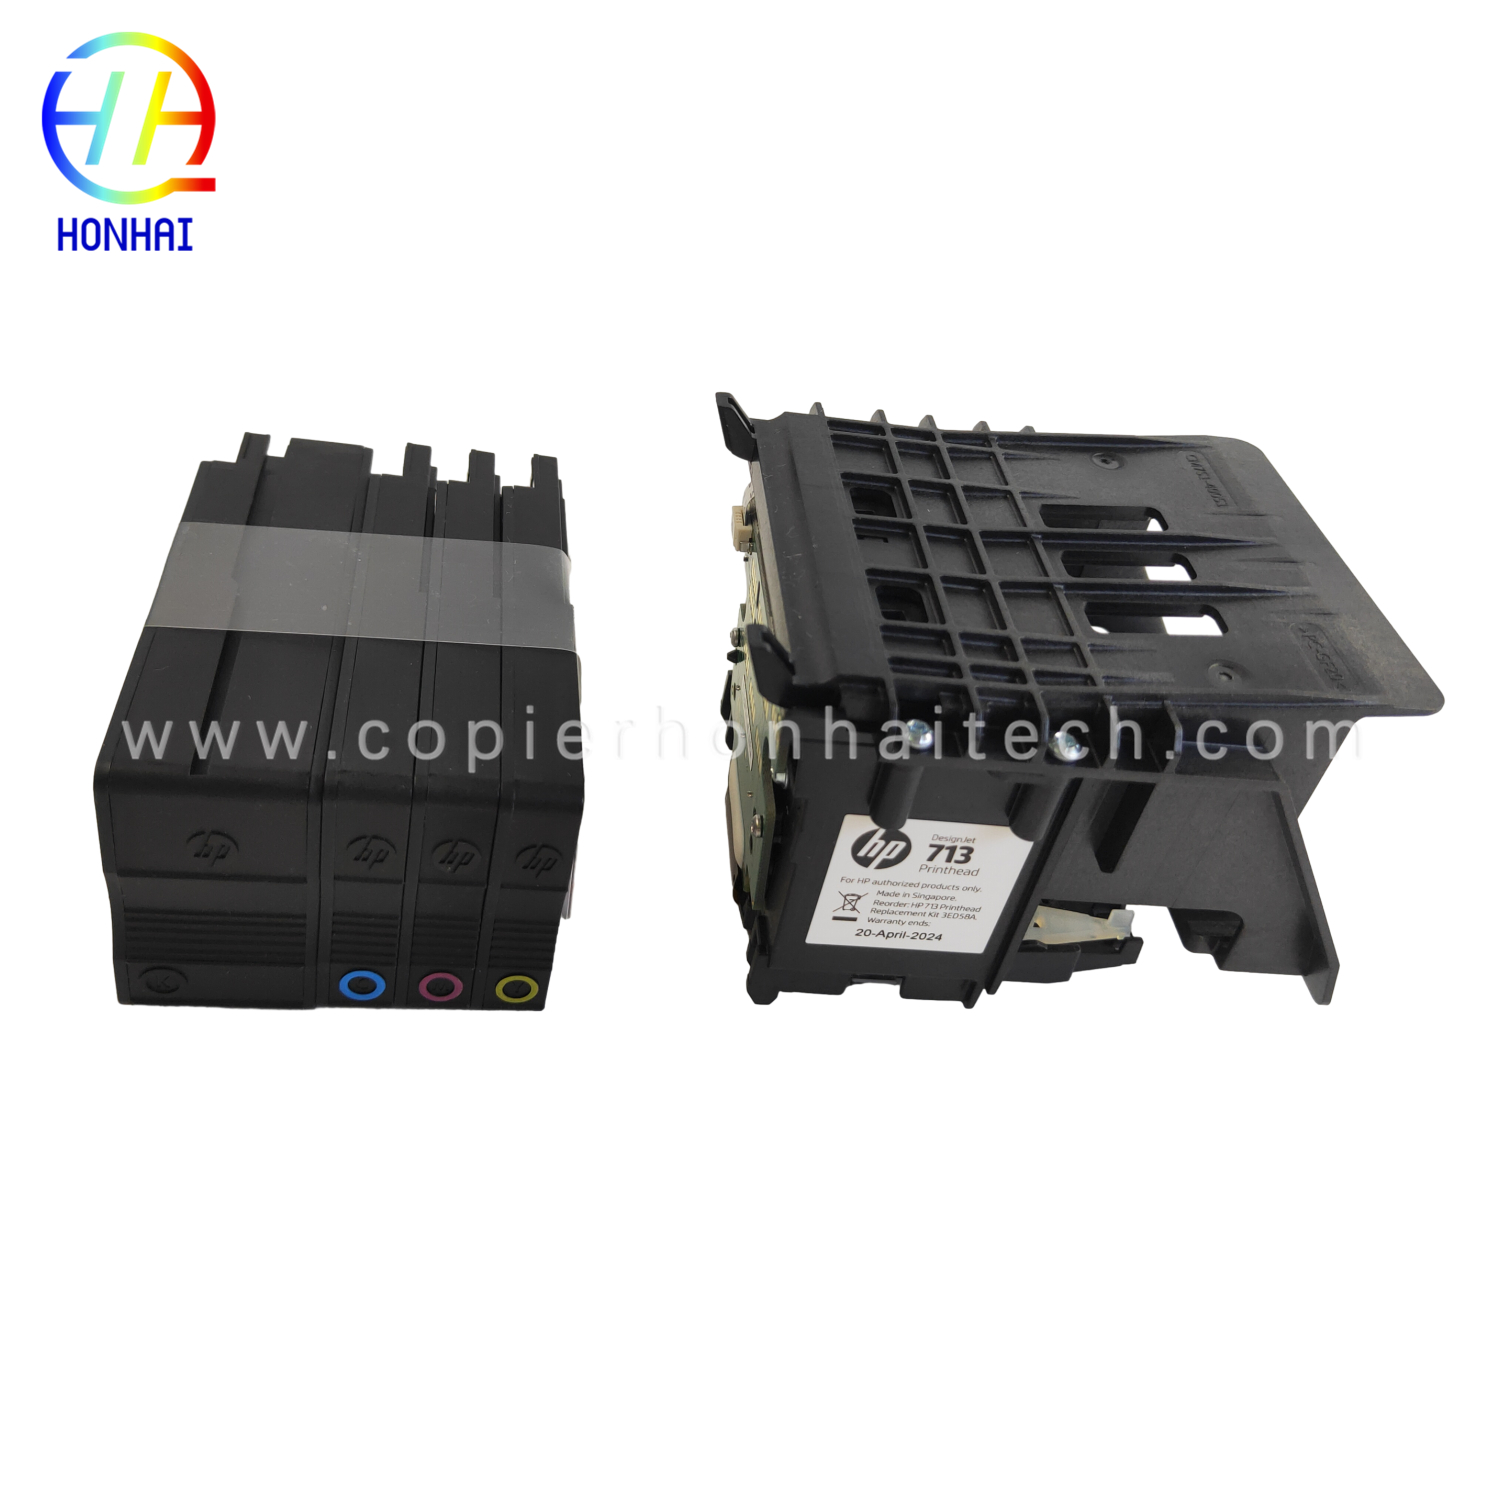 https://www.copierhonhaitech.com/original-new-designjet-printhead-replacement-kit-3ed58a-for-hp-713-designjet-t650-t630-t230-t210-studio-plotter-printers-black-product/